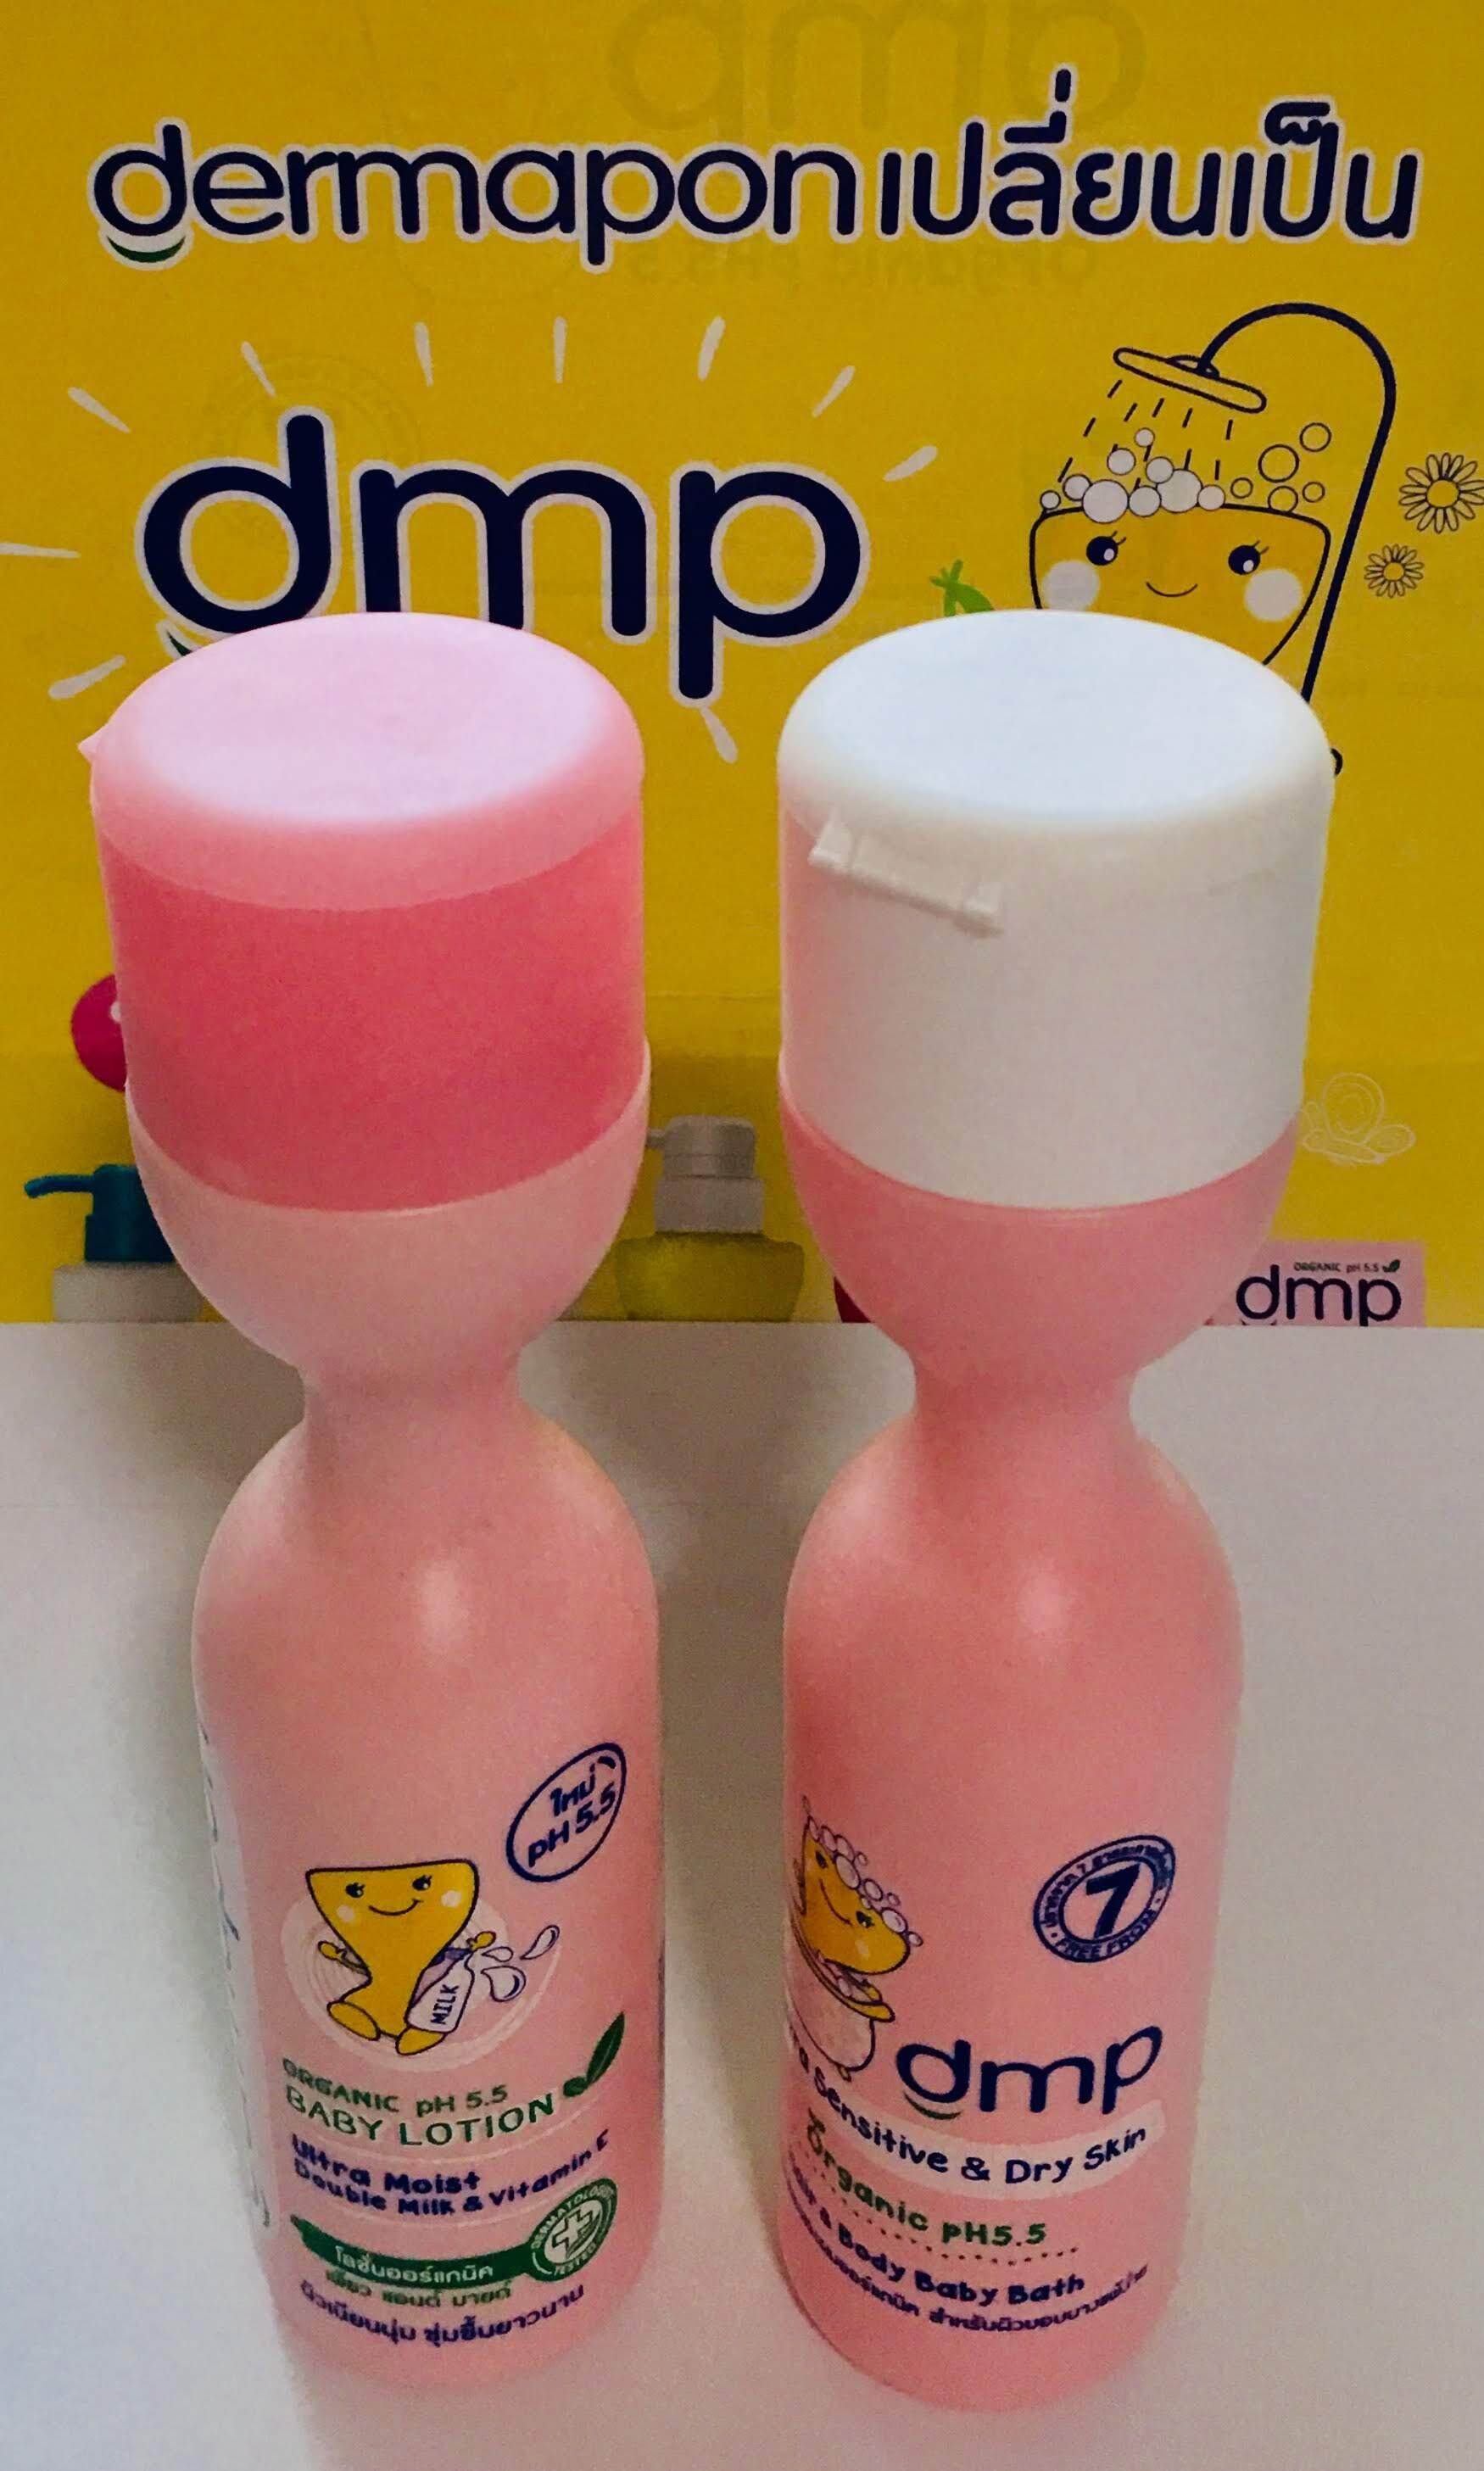 ชุด dmp (dermapon) ครีมอาบน้ำและ โลชั่น ขนาด 200 ml. แพ็คคู่